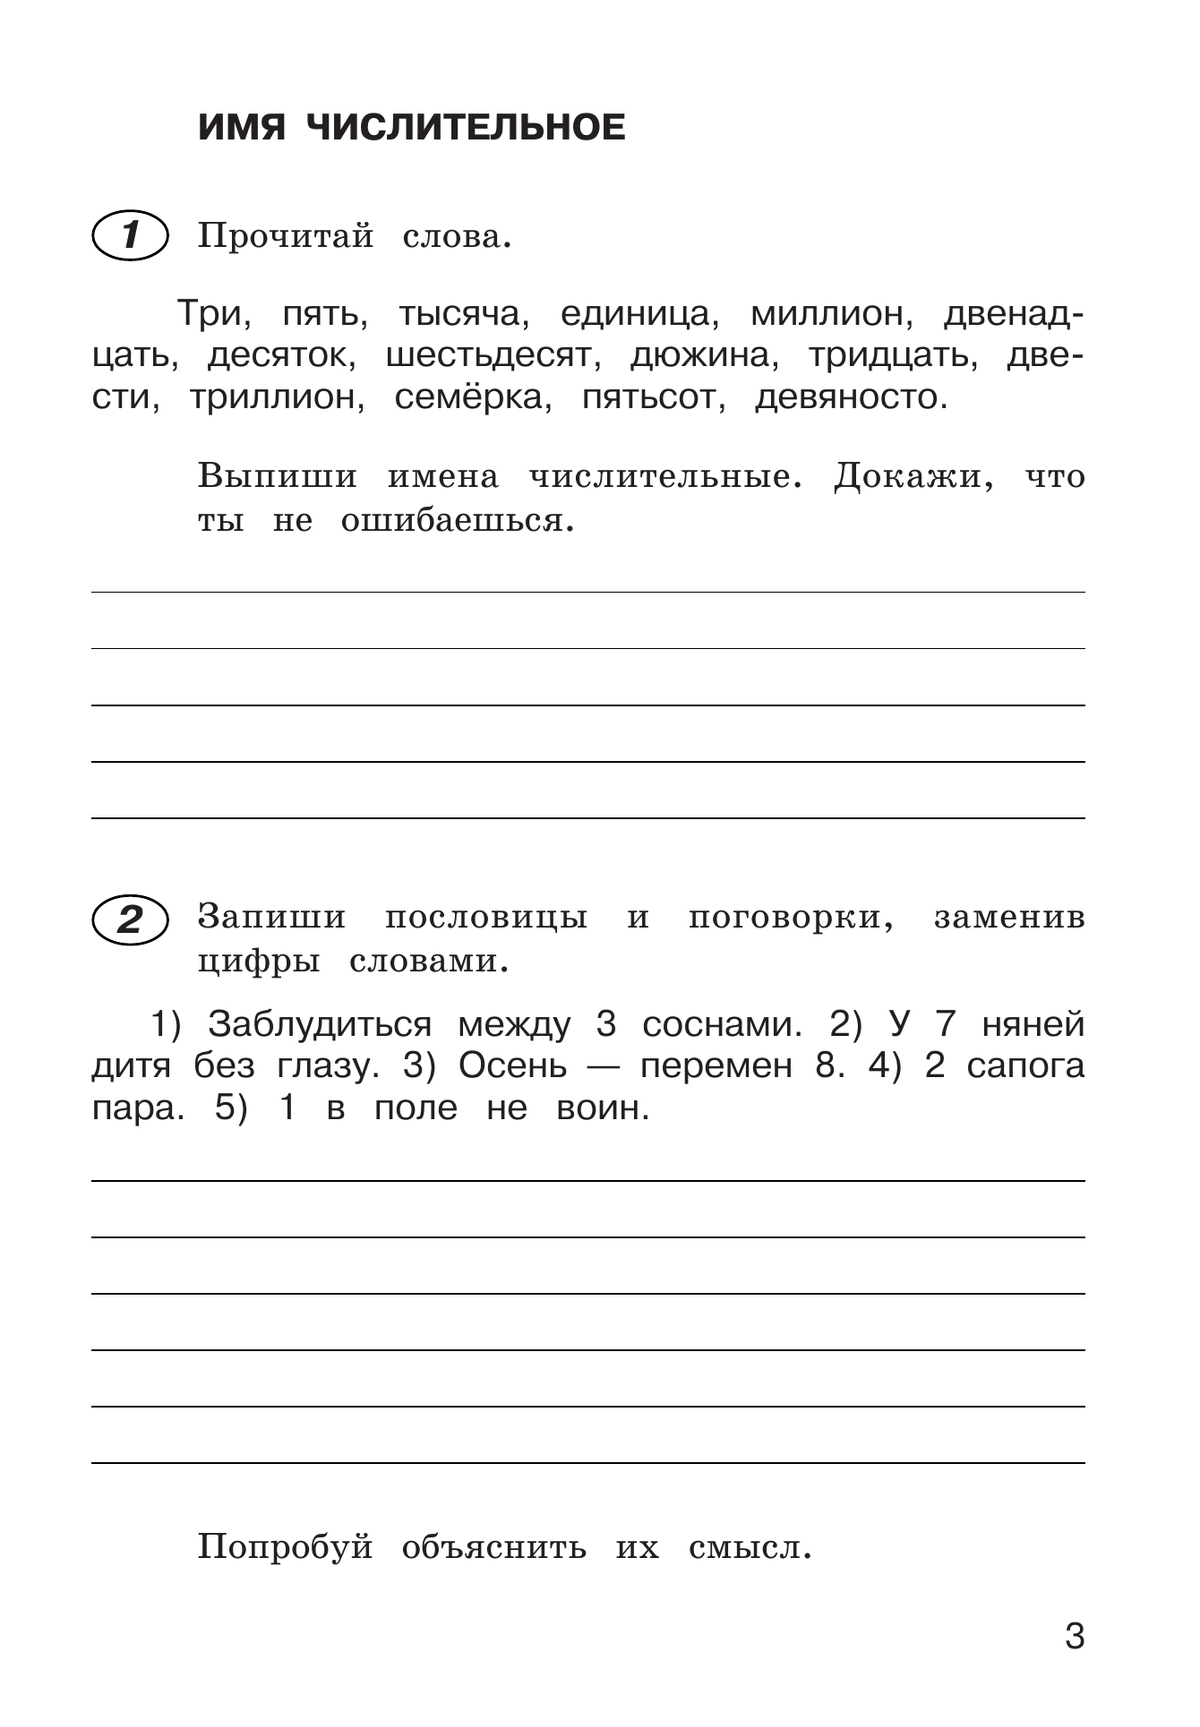 Рабочая тетрадь по русскому языку. 4 класс. В 2 частях. Часть 2 8